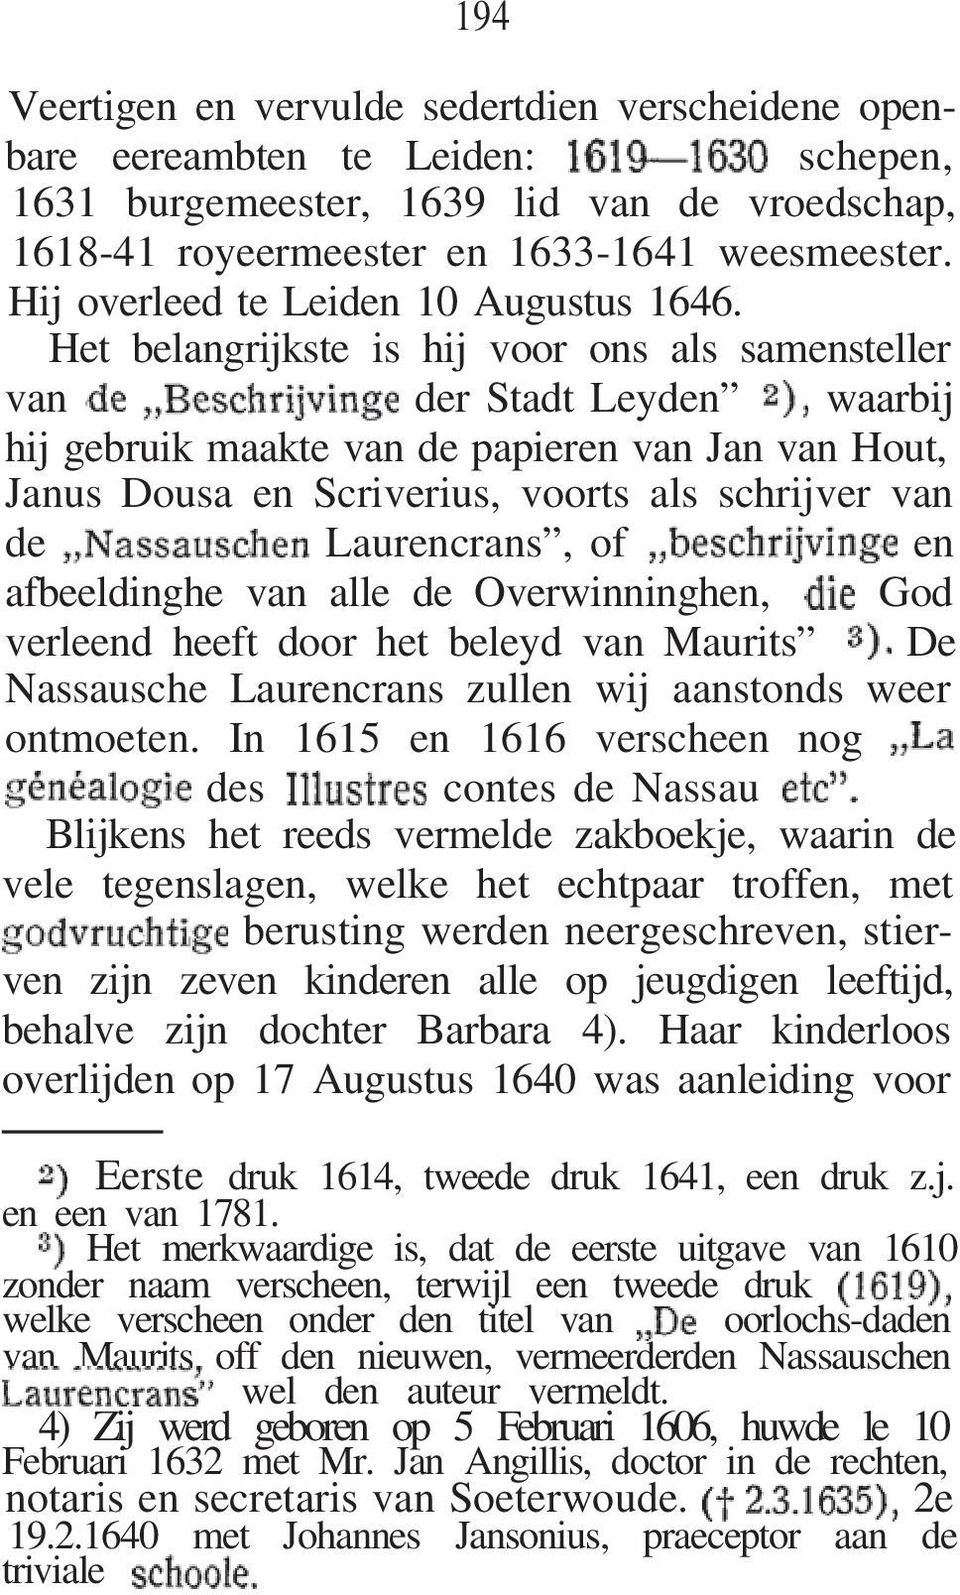 Het belangrijkste is hij voor ons als samensteller van der Stadt Leyden waarbij hij gebruik maakte van de papieren van Jan van Hout, Janus Dousa en Scriverius, voorts als schrijver van de